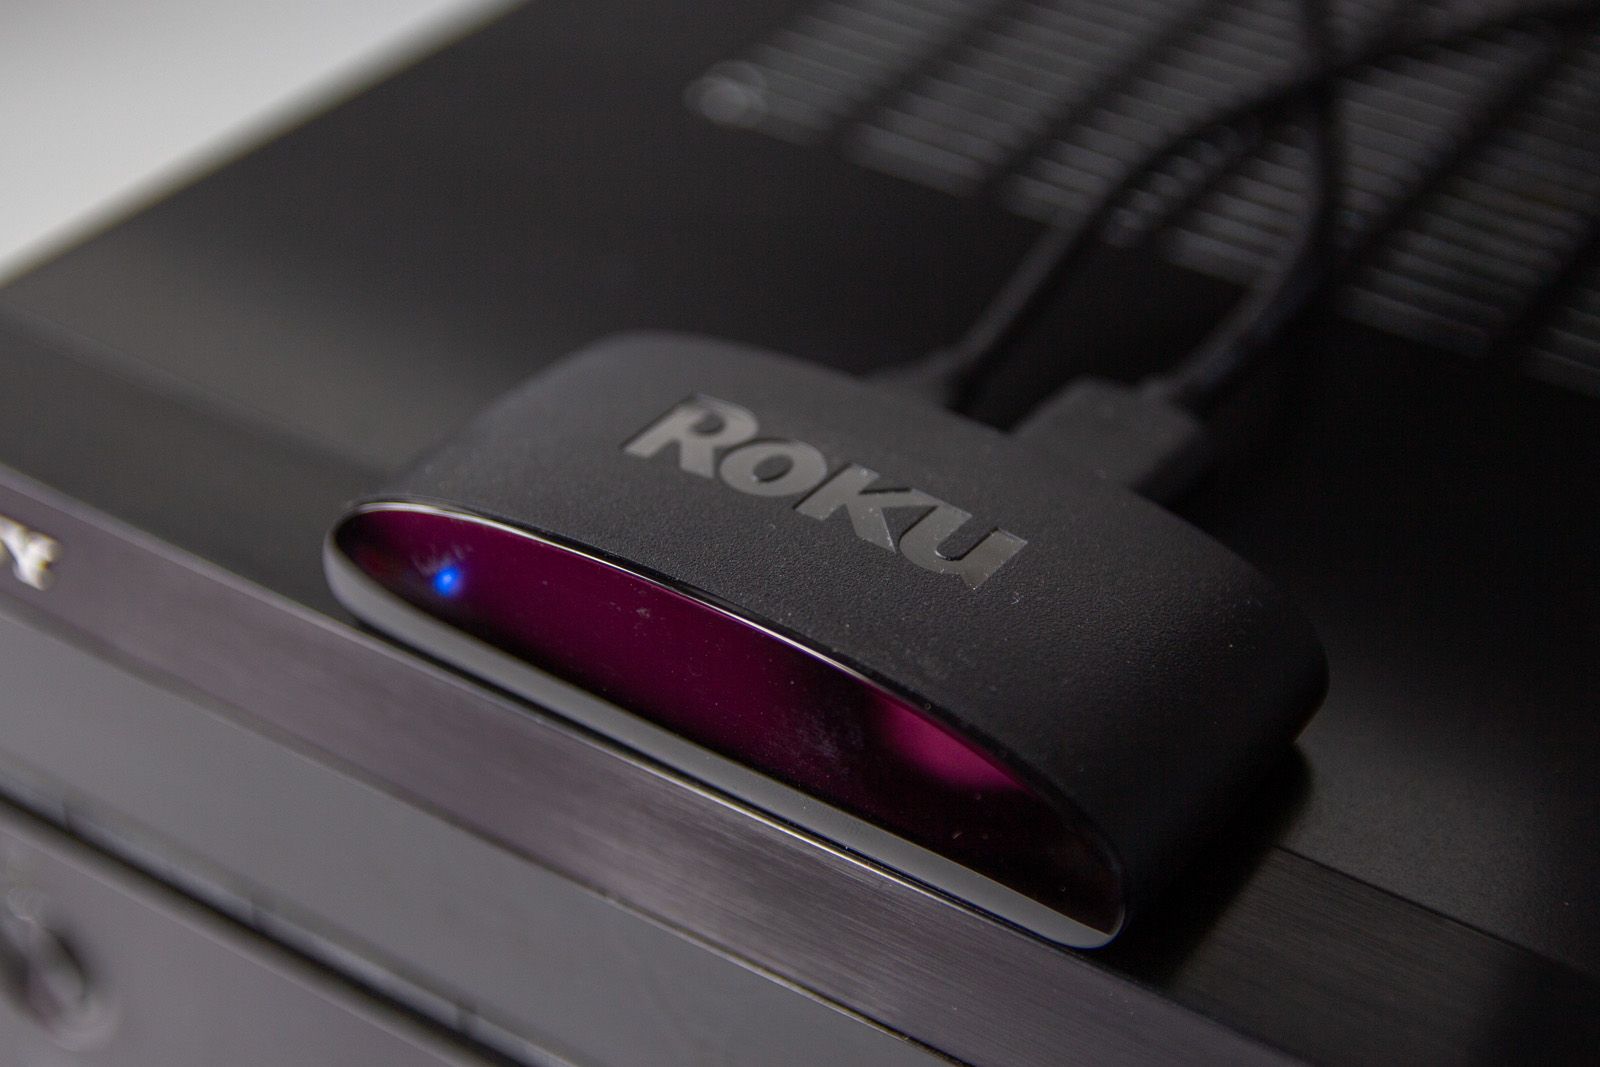 Roku Streaming Stick 4K 2021: Cómo funciona (Review en español